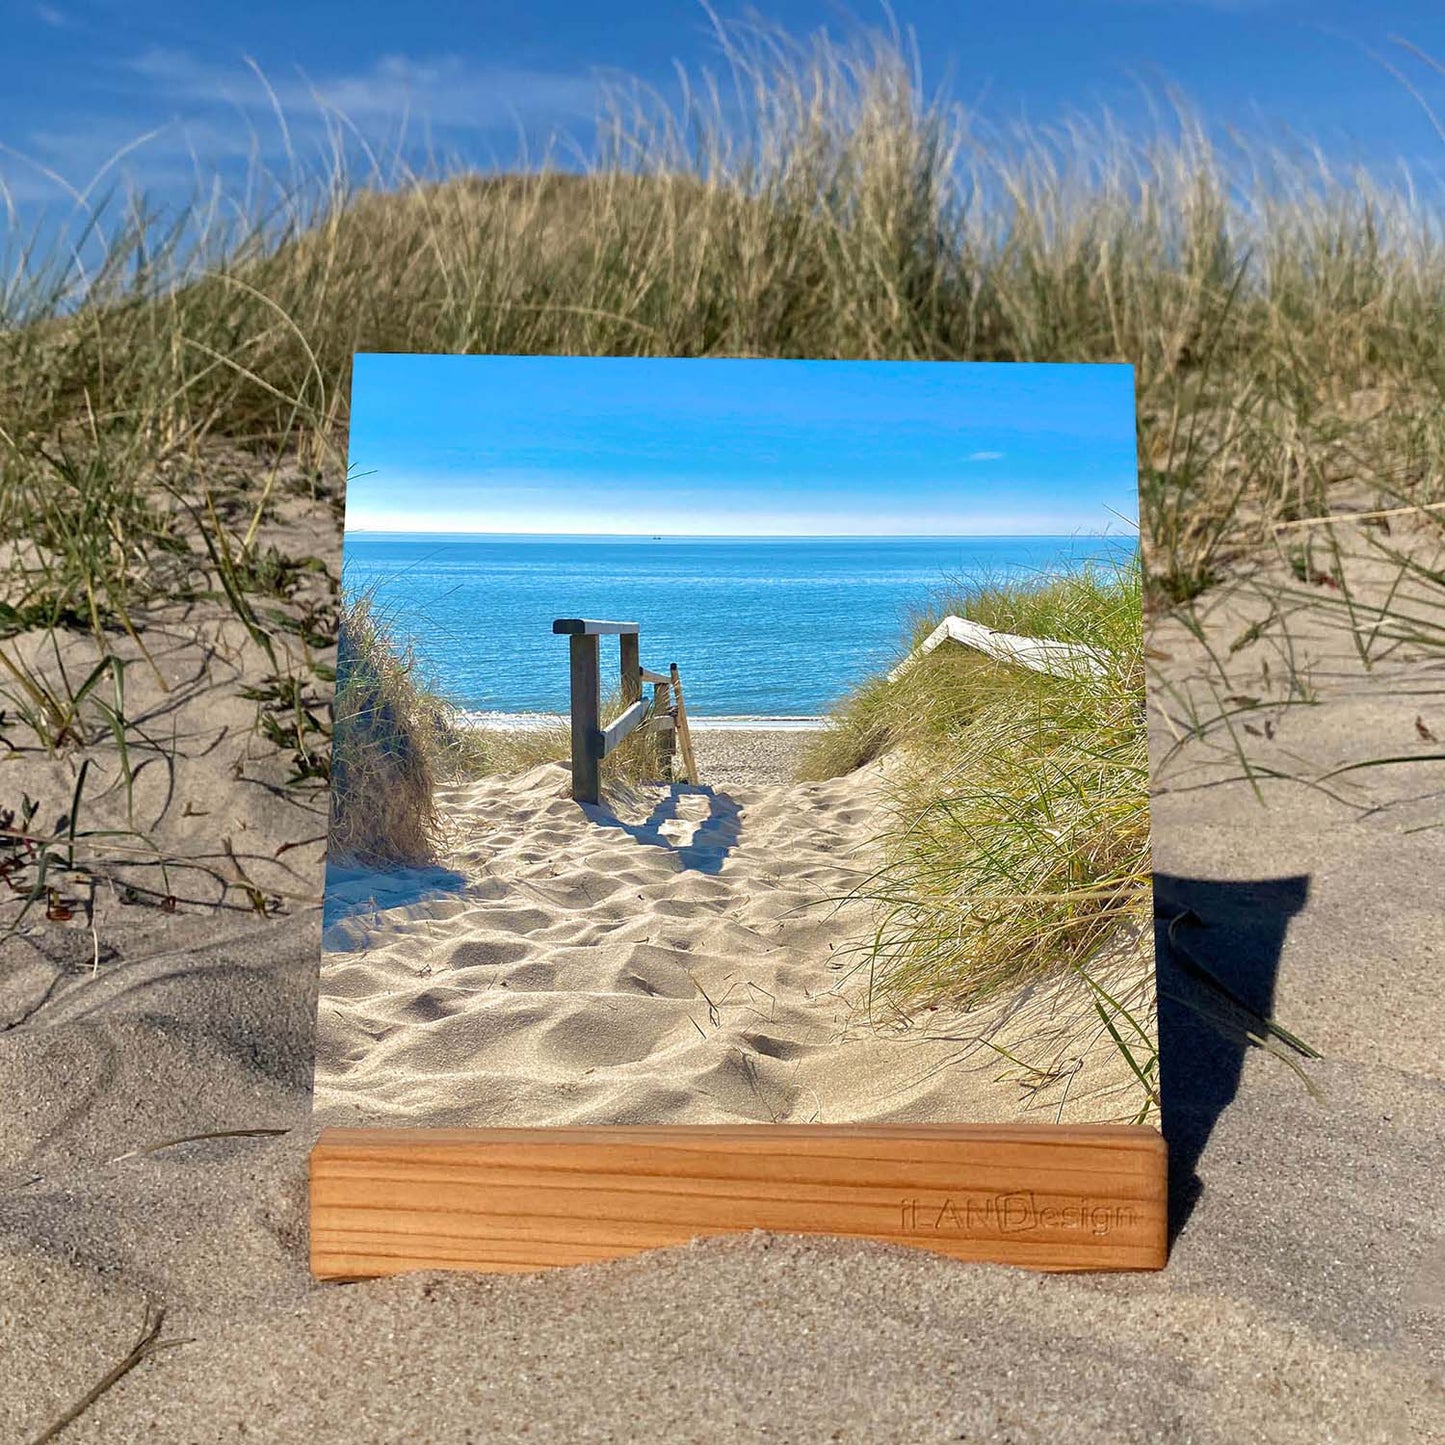 Acrylbild mit Strandtreppe zum Meer. Rechts und links sieht man Dünengras und einen wunderschönen Blick auf die Nordsee. Das Foto wurde auf der Insel Sylt gemacht. Das Acrylbild steht in einem Holzaufsteller in den Sylter Dünen.